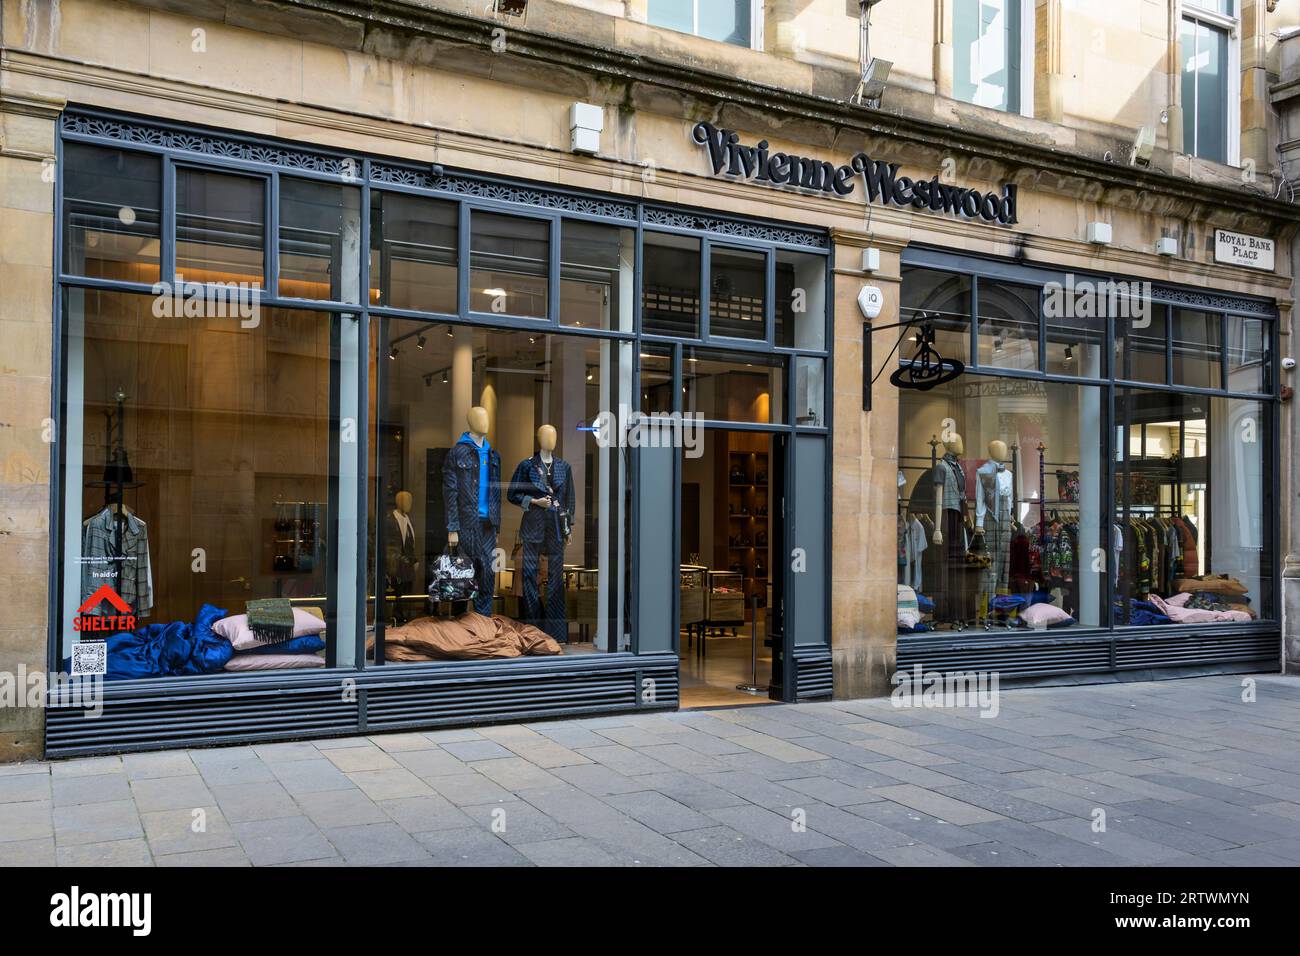 Vivienne Westwood shop, Glasgow, Scotland, UK, Europe Stock Photo